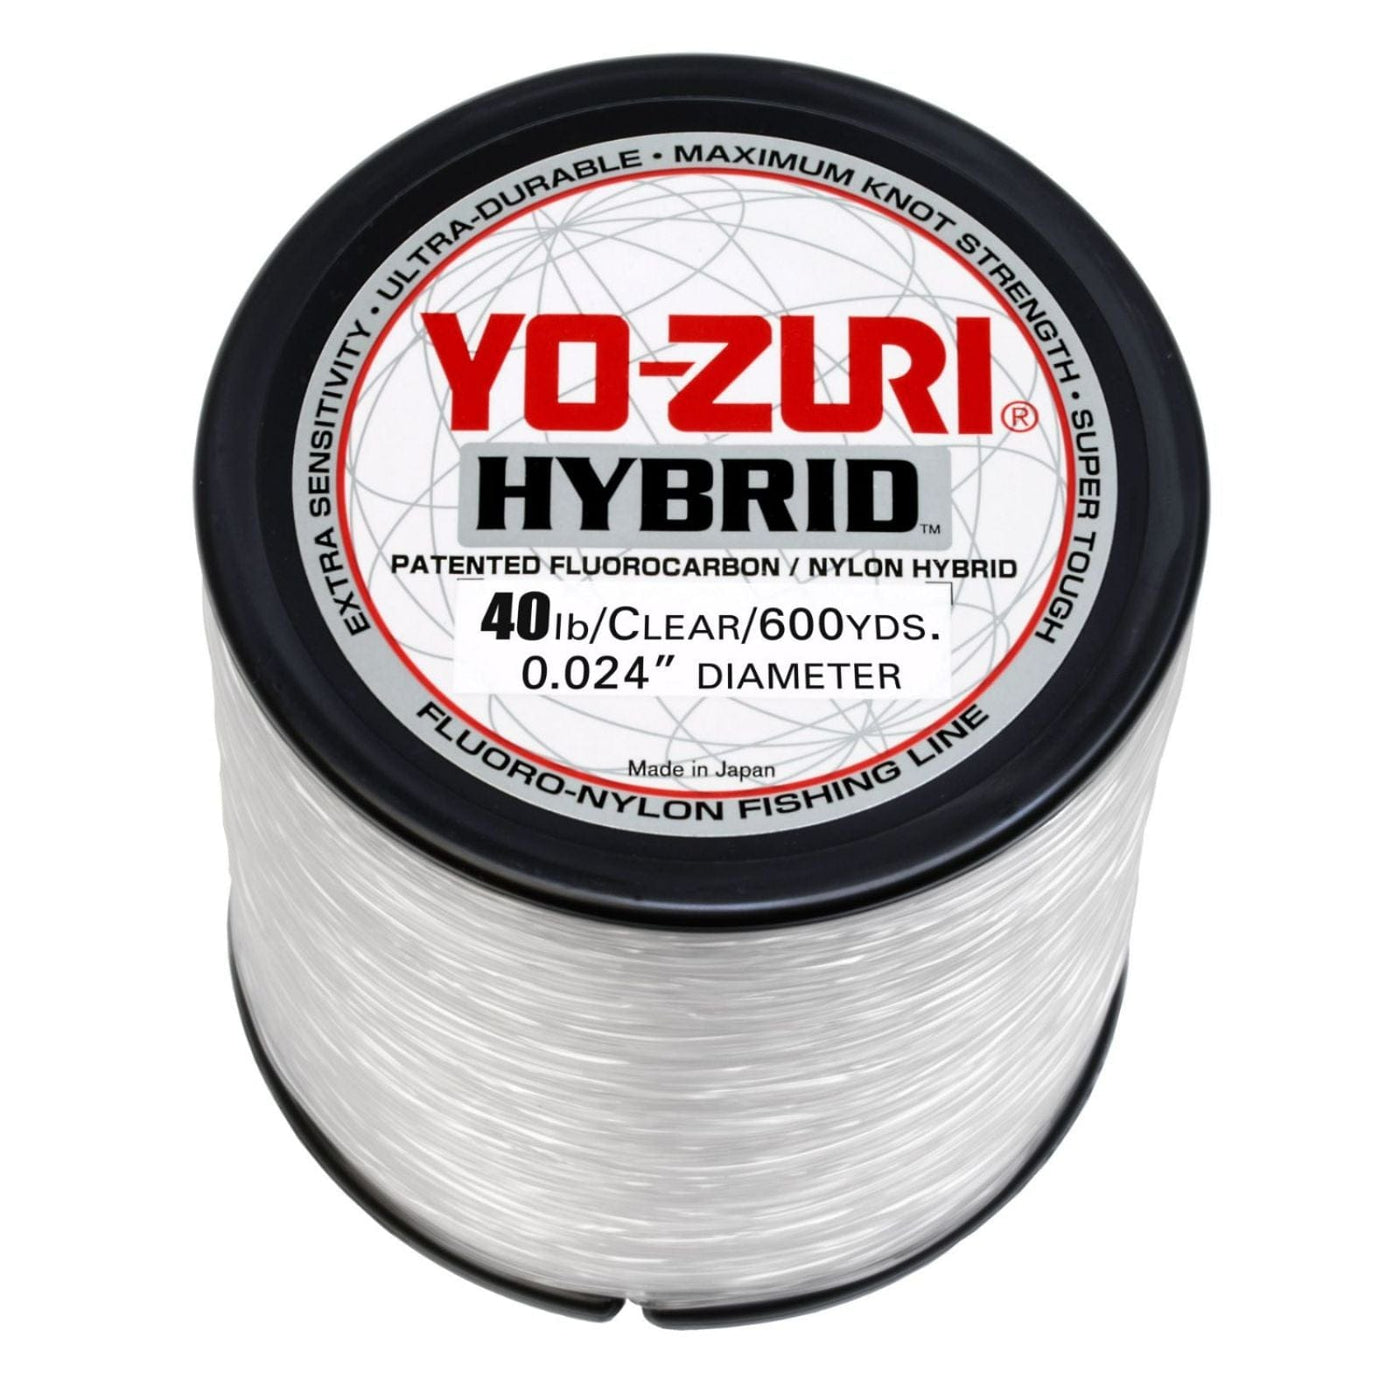 Yo-Zuri Yo-Zuri Hybrid Clear Line 600YD Spool in 40 LB Fishing